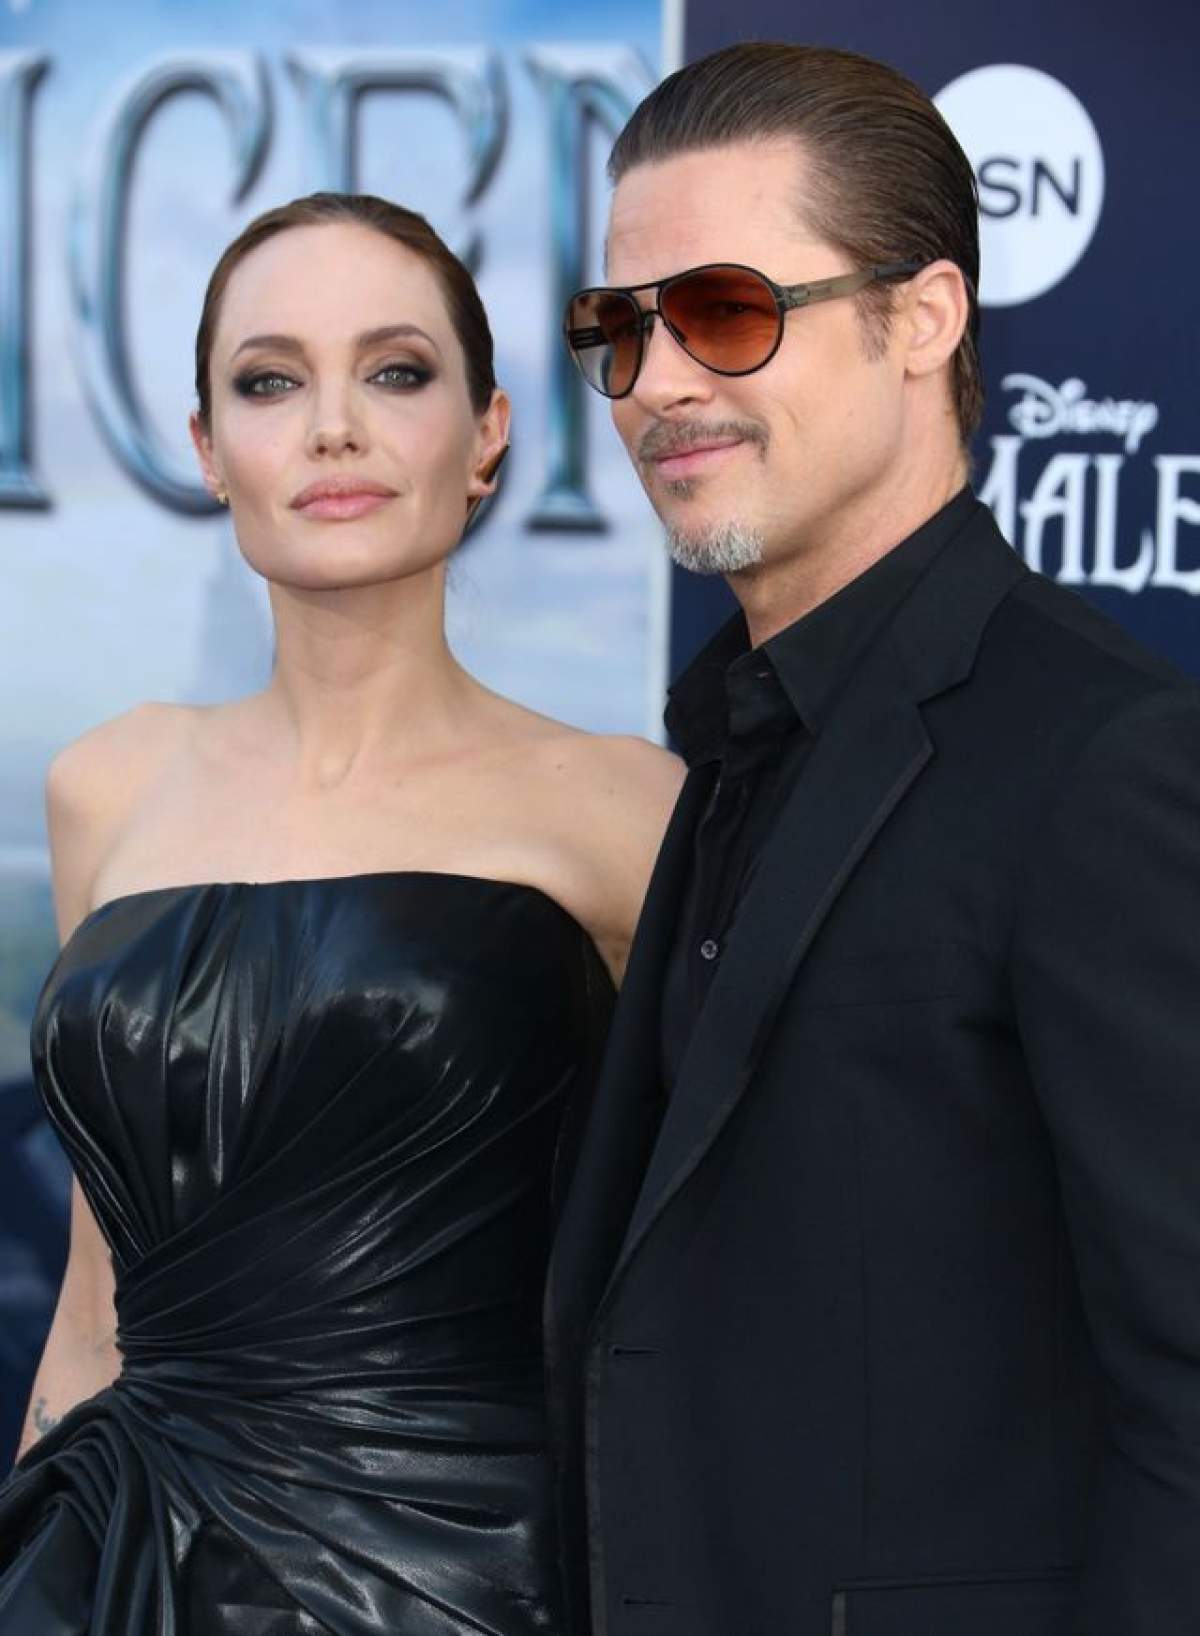 Opulenţă maximă! Ce cadou de nuntă i-a cumpărat Angelina Jolie lui Brad Pitt